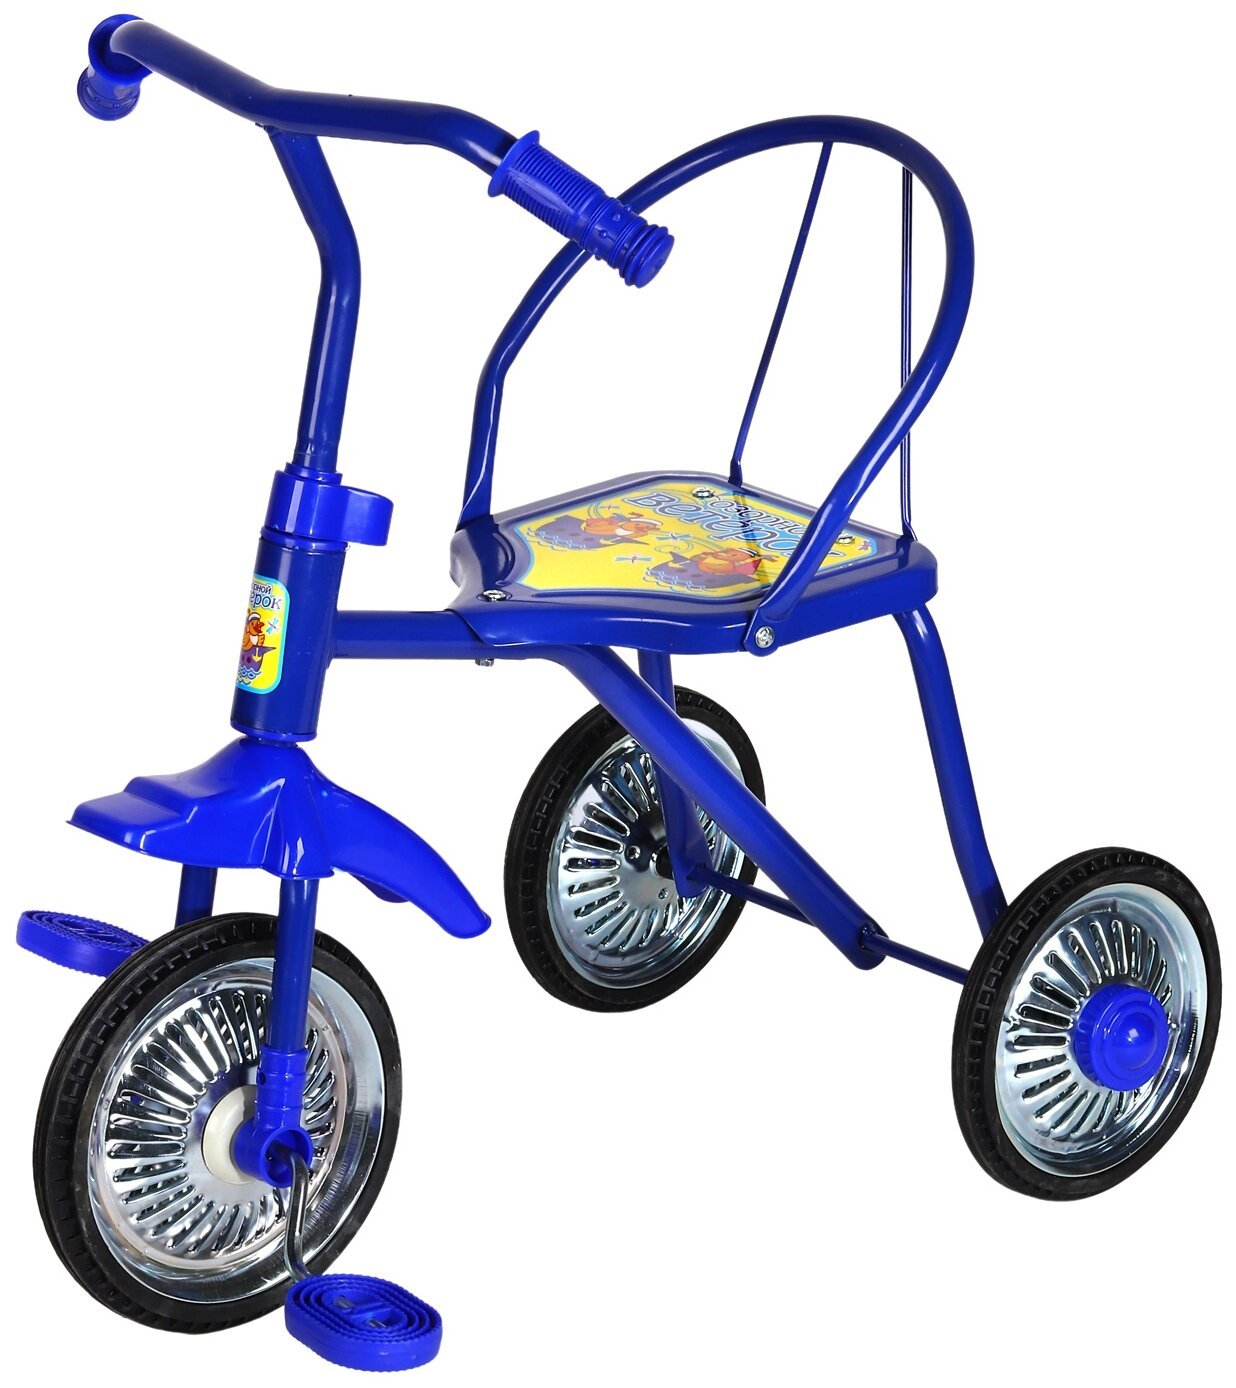 Велосипед трехколесный детский лучший. Детский трехколесный велосипед озорной ветерок GV-b3-2mx цвета микс. Трехколесный велосипед озорной ветерок. Велосипед озорной ветерок 3-х колесный. Велосипед трёхколёсный детский lh702.